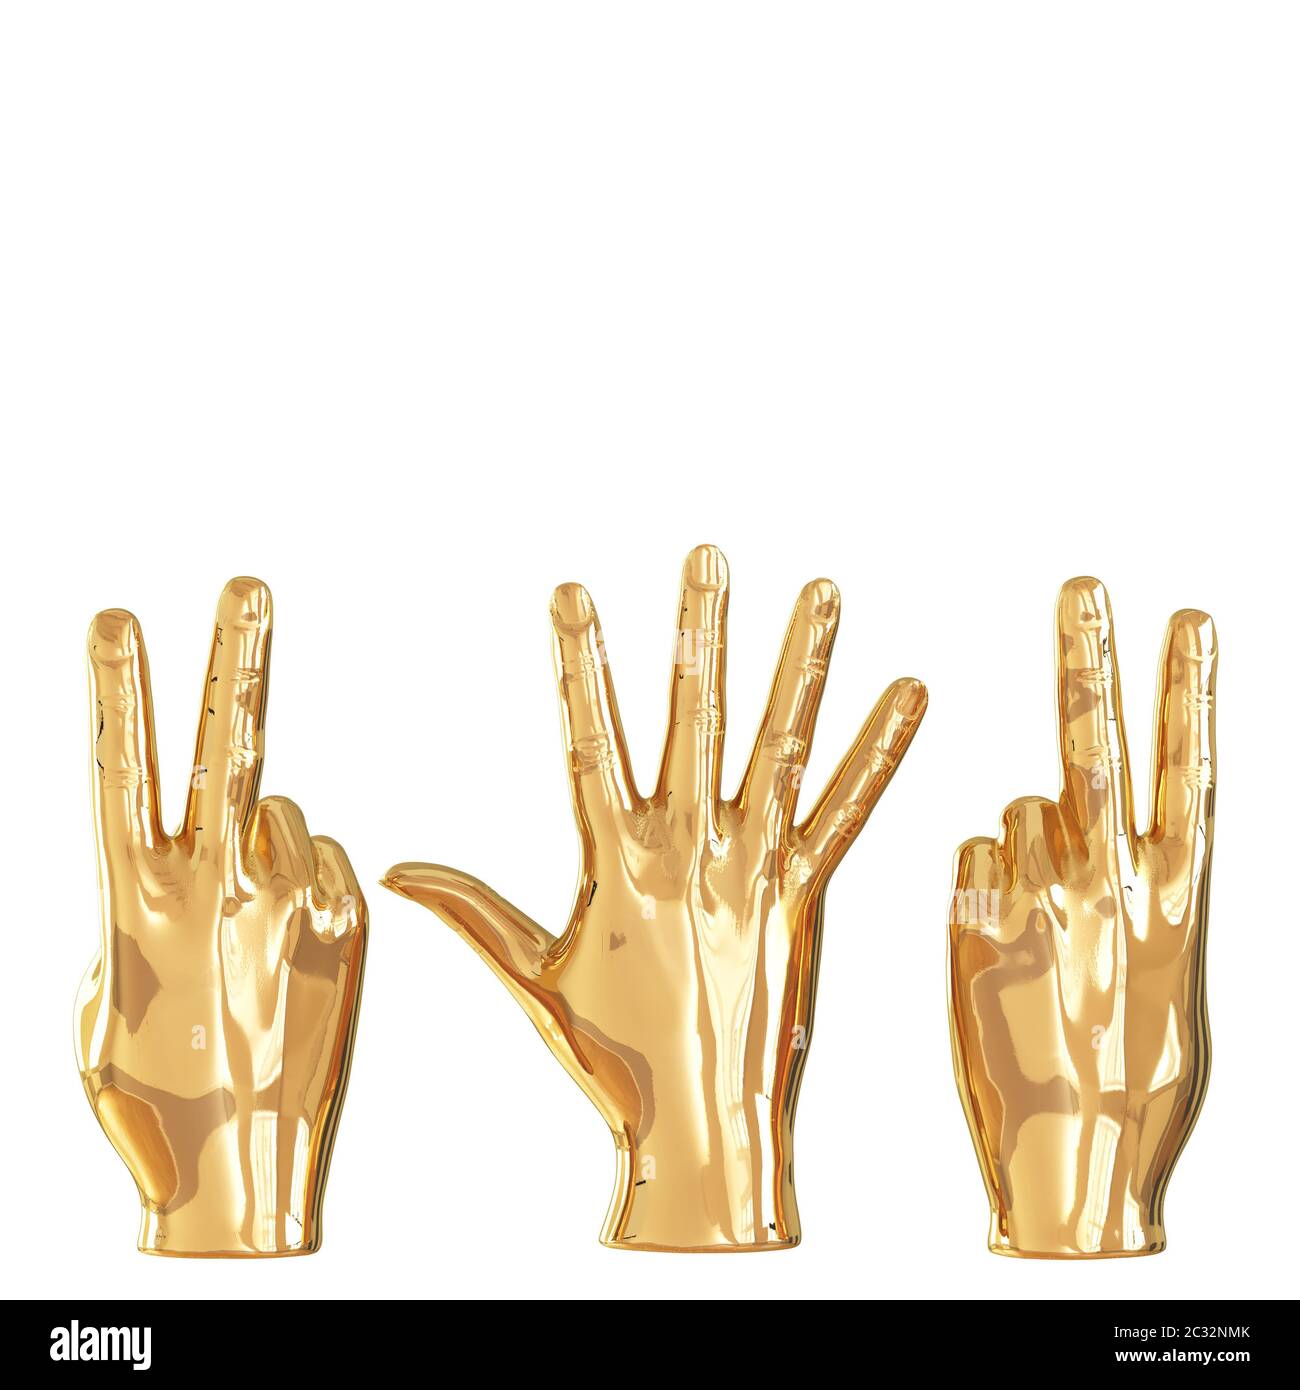 Trois figures dorées de mains montrant différents gestes sur un fond blanc. Vue arrière. CopySpace. rendu 3d Banque D'Images